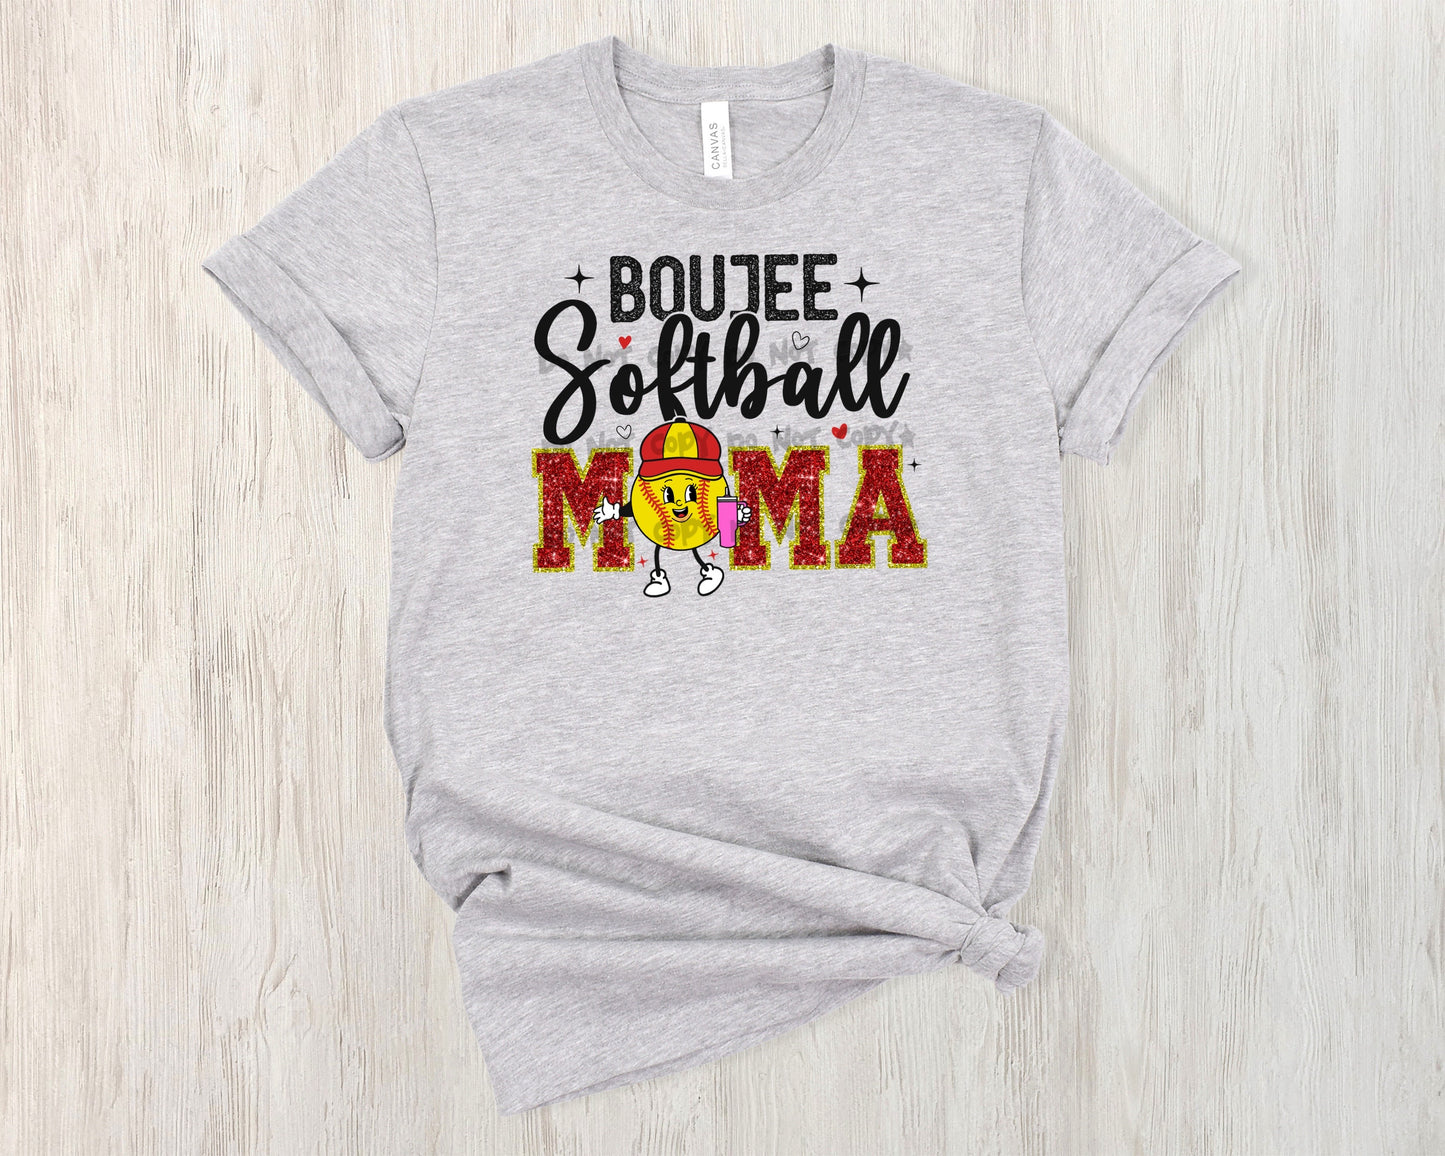 Boujee Softball mama- DTF